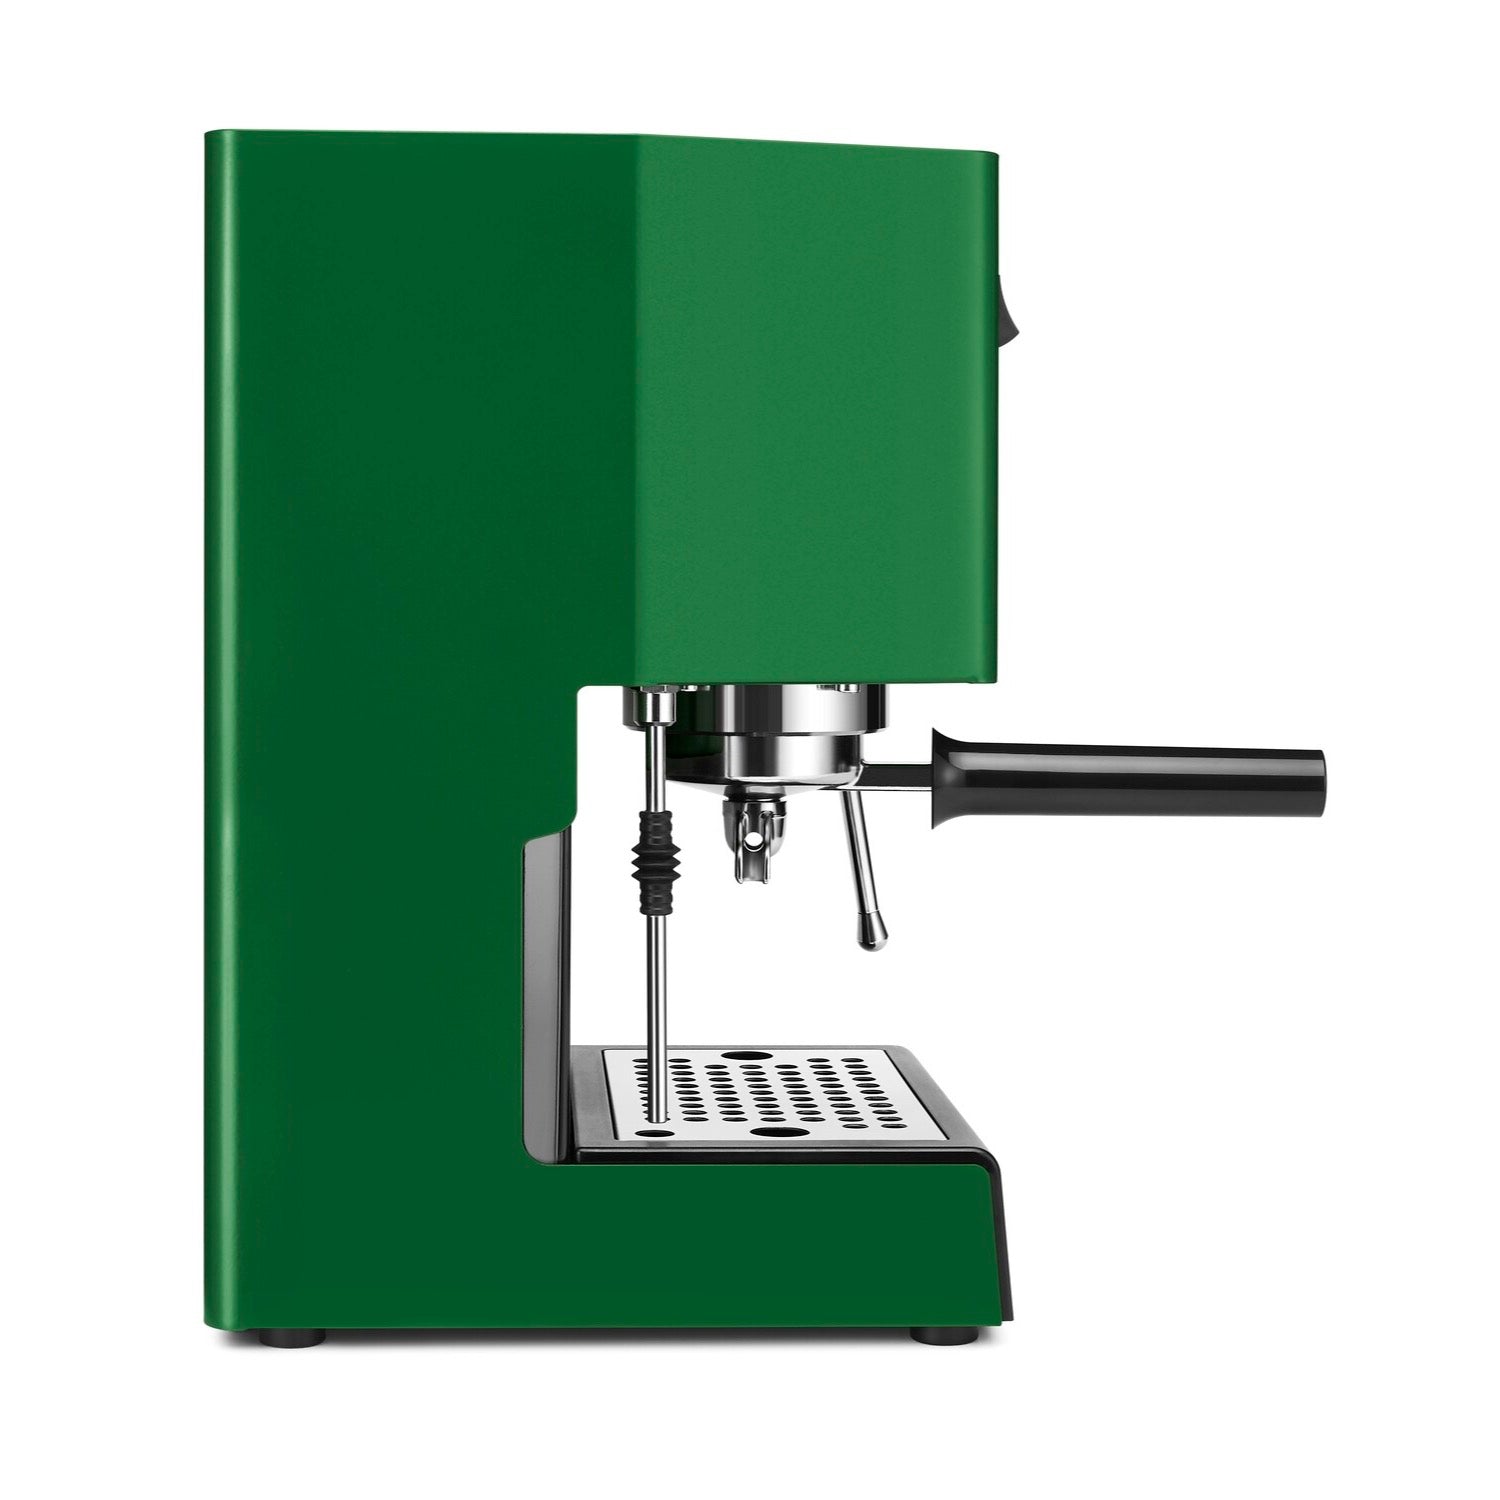 Gaggia Classic 2023 Evo 240V | Manual Espresso Coffee Machine